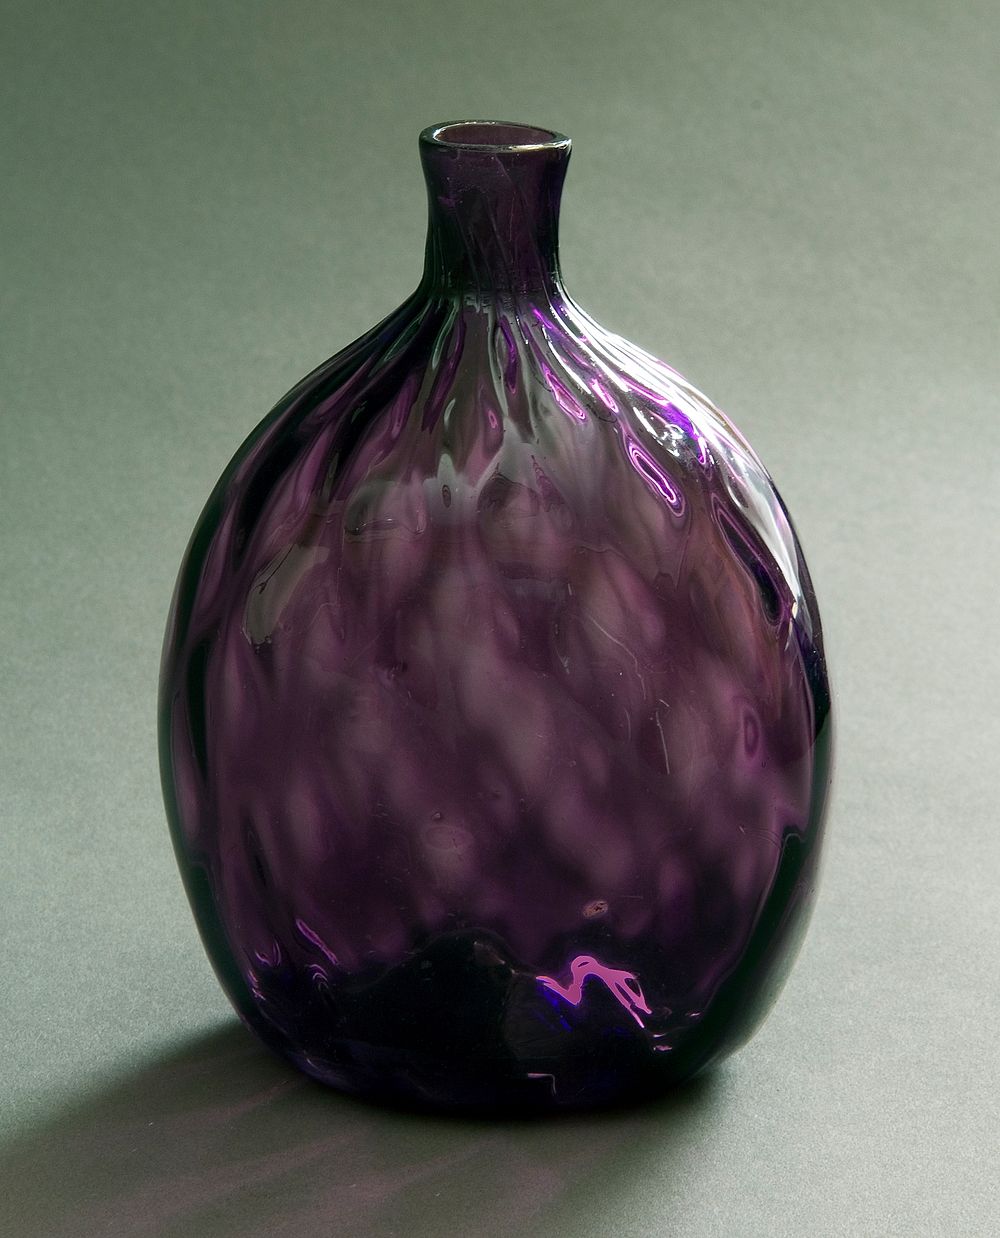 Flask by American Flint Glass Works